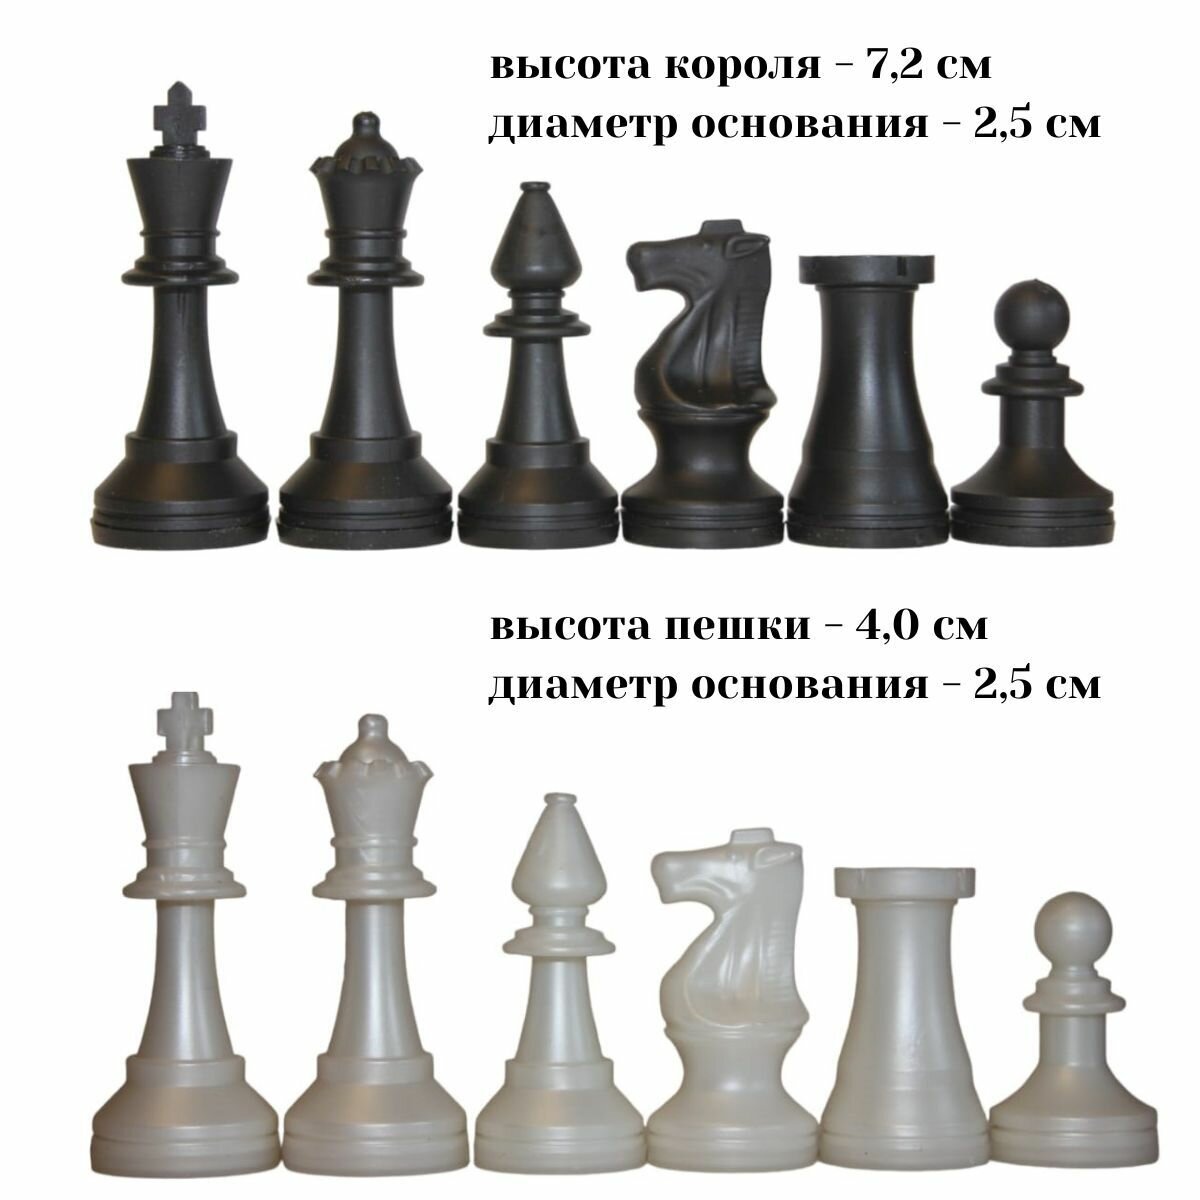 Обиходные пластиковые шахматные фигуры (без доски). Сделано в России